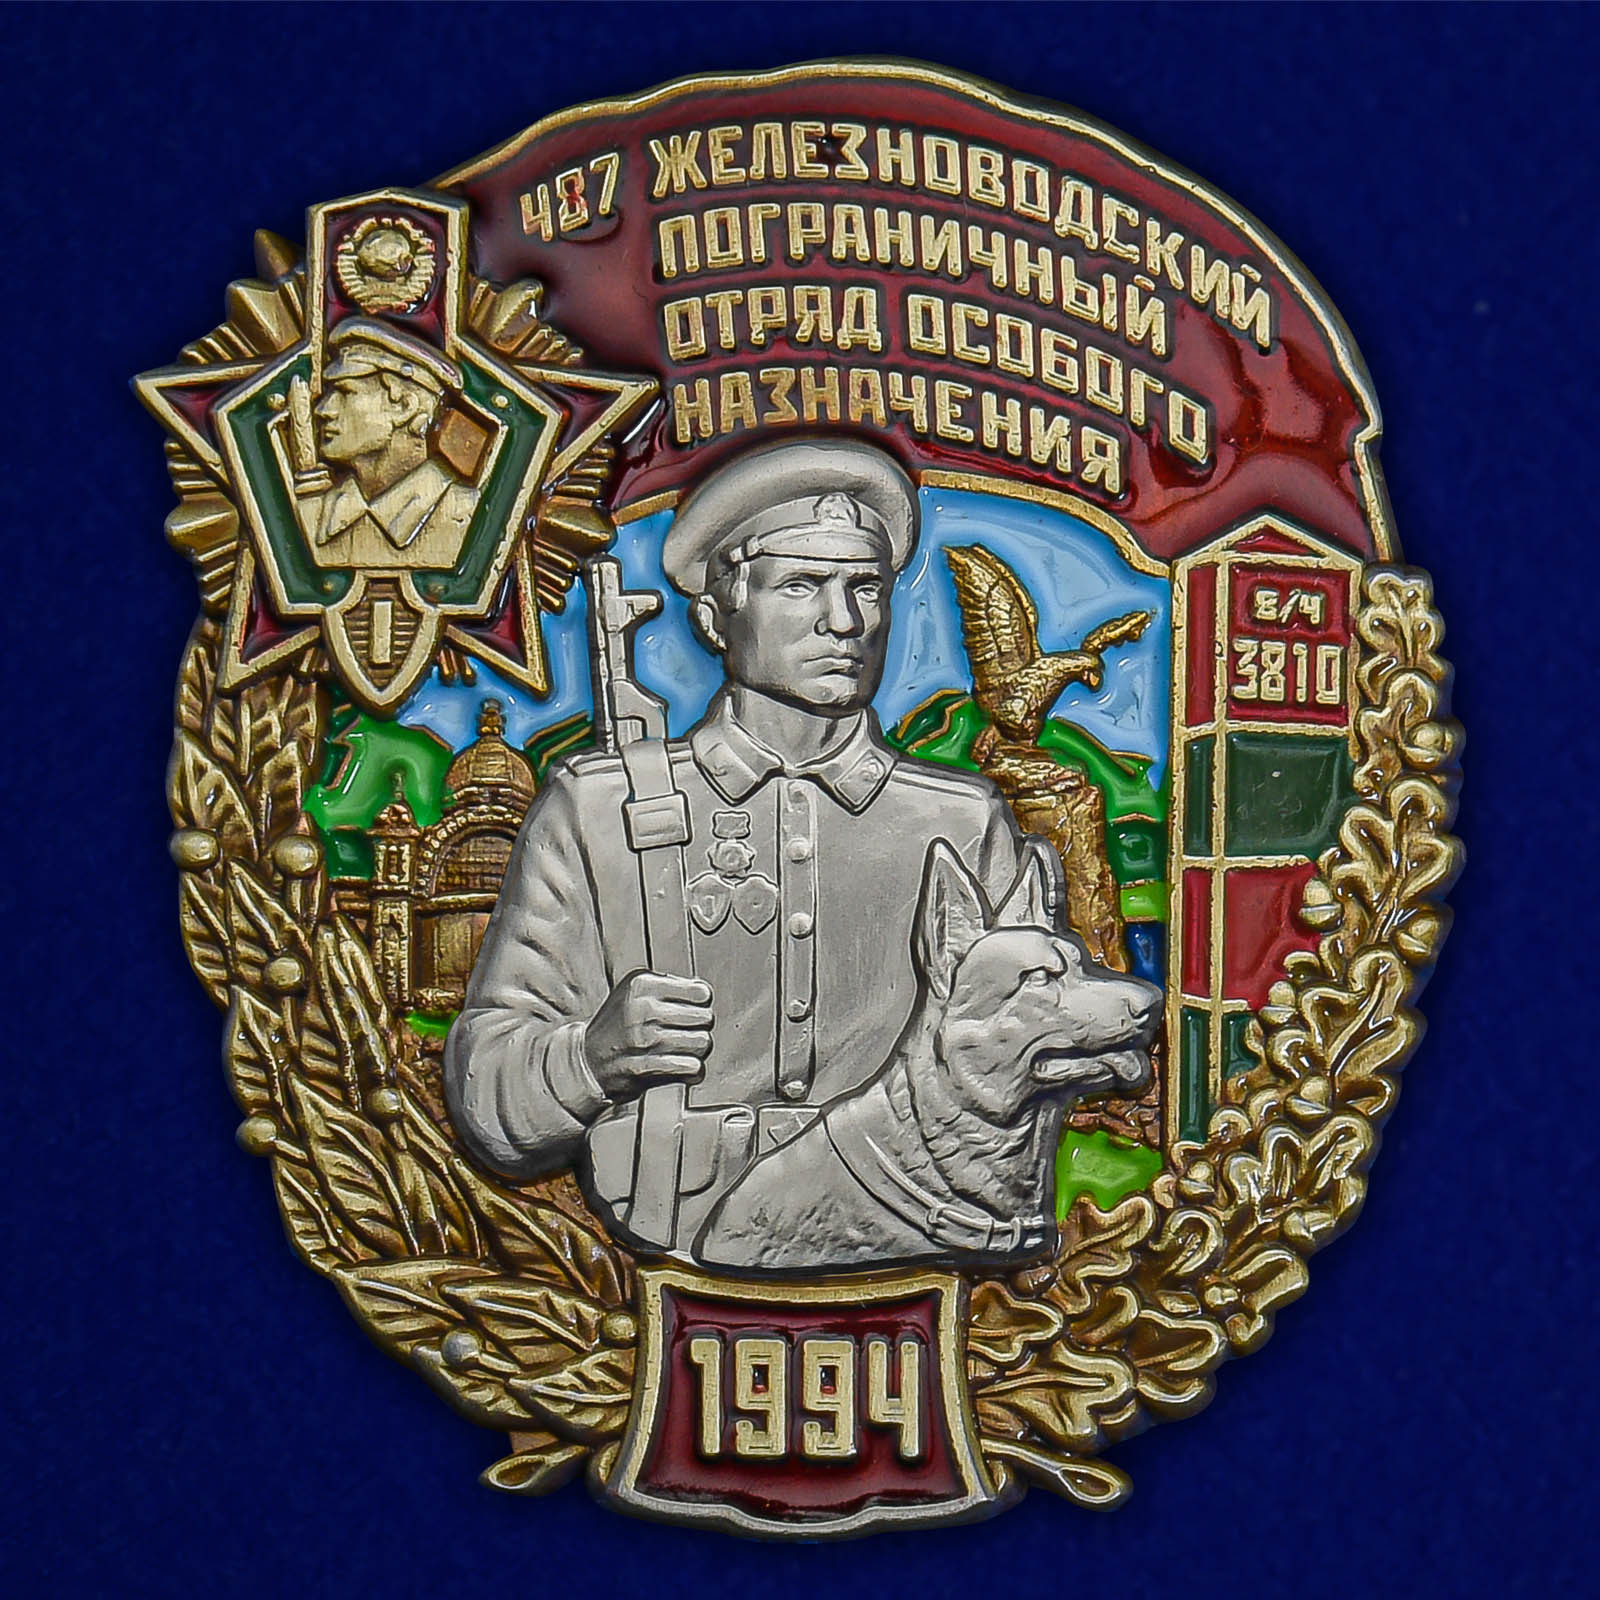 Сувенирный знак Kamukamu 487 Железноводский Пограничный отряд особого назначения 2555